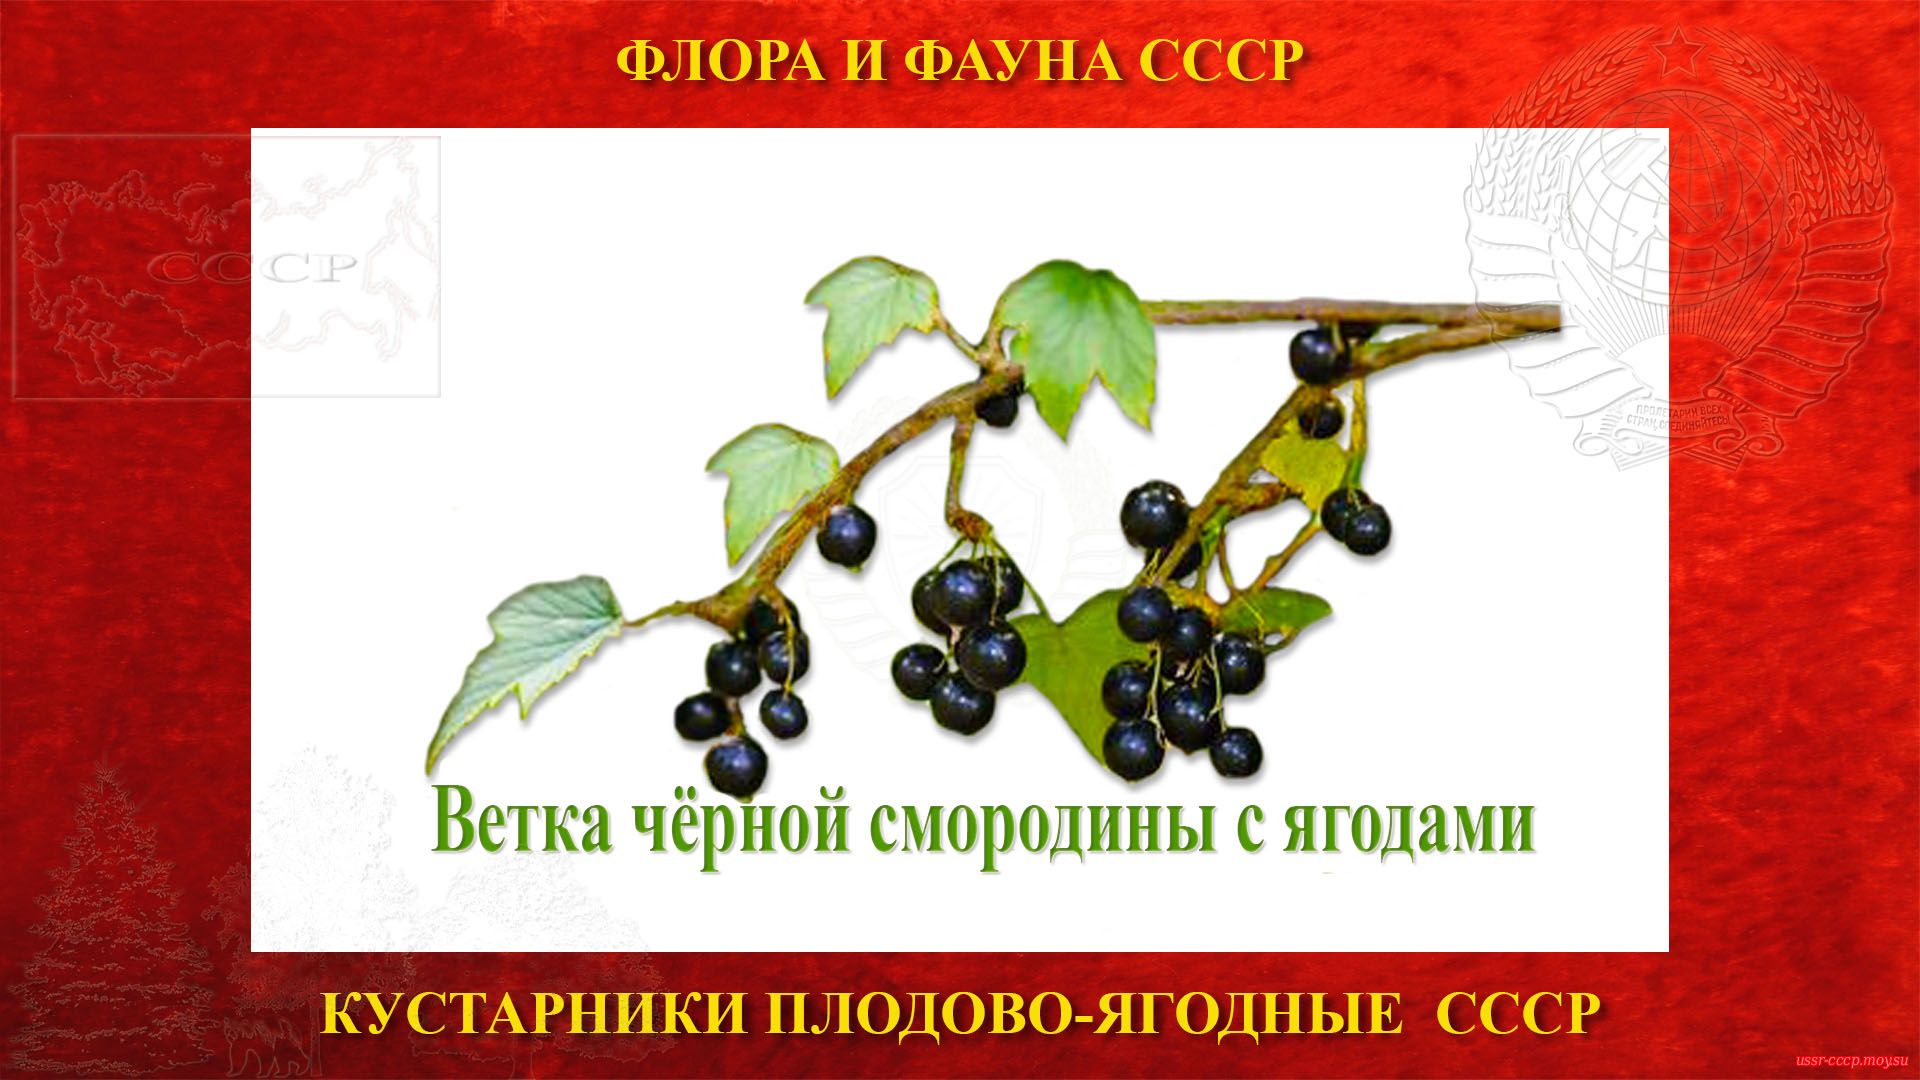 Ветка смородины чёрной с ягодами (СССР)